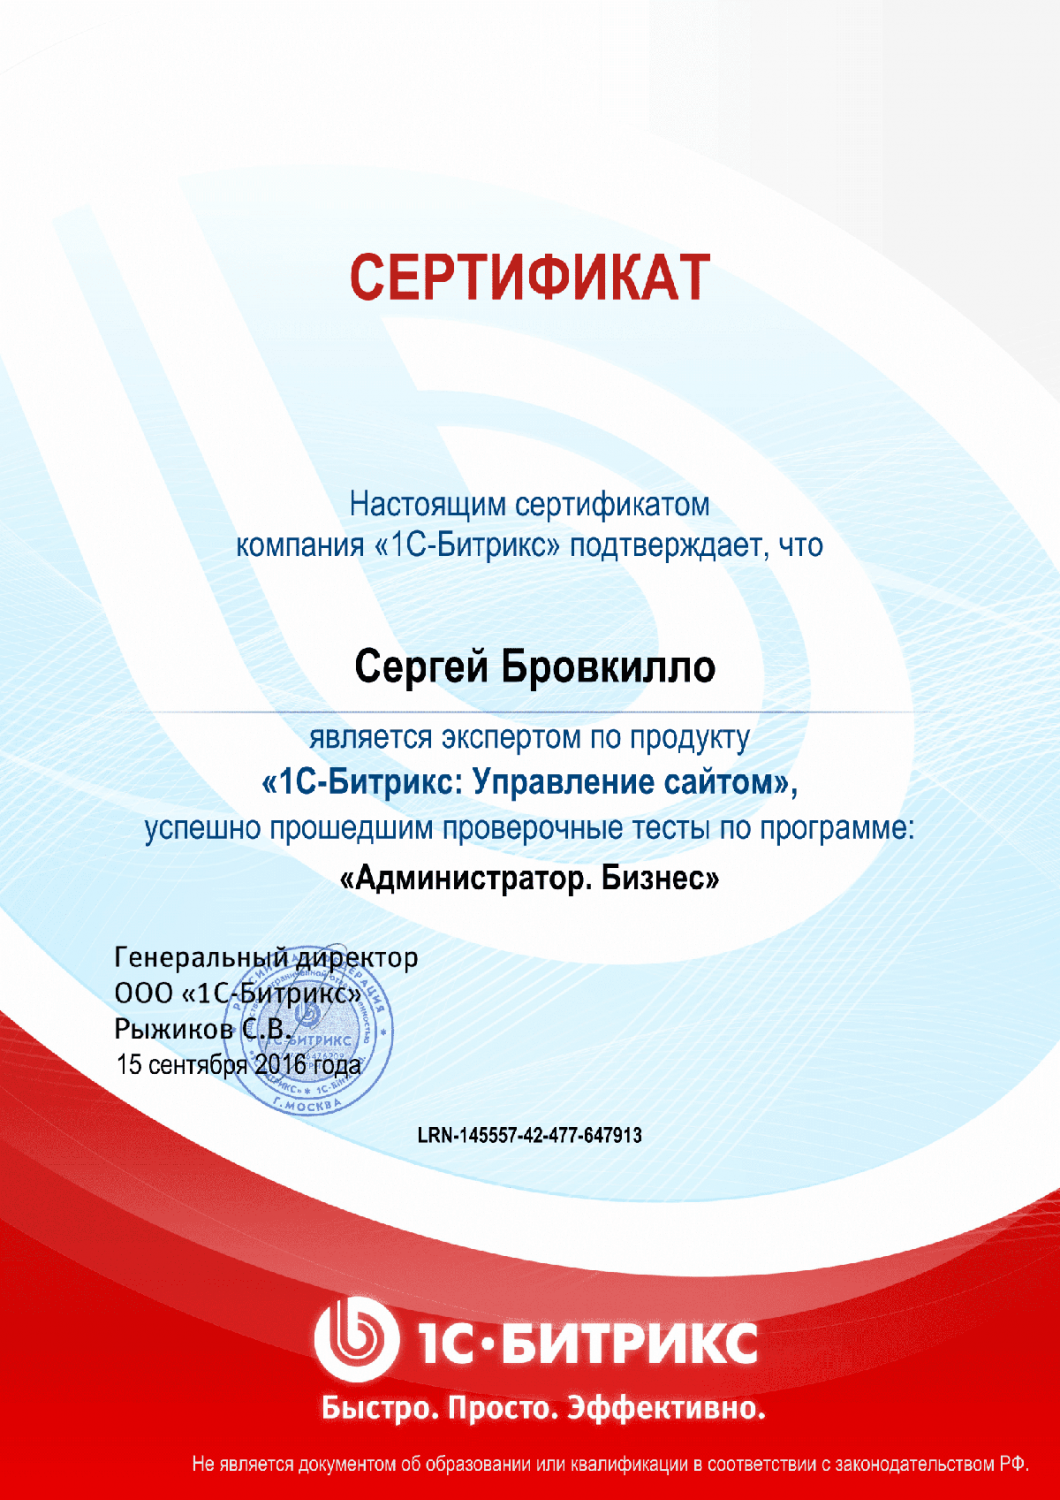 Сертификат эксперта по программе "Администратор. Бизнес" в Уфы